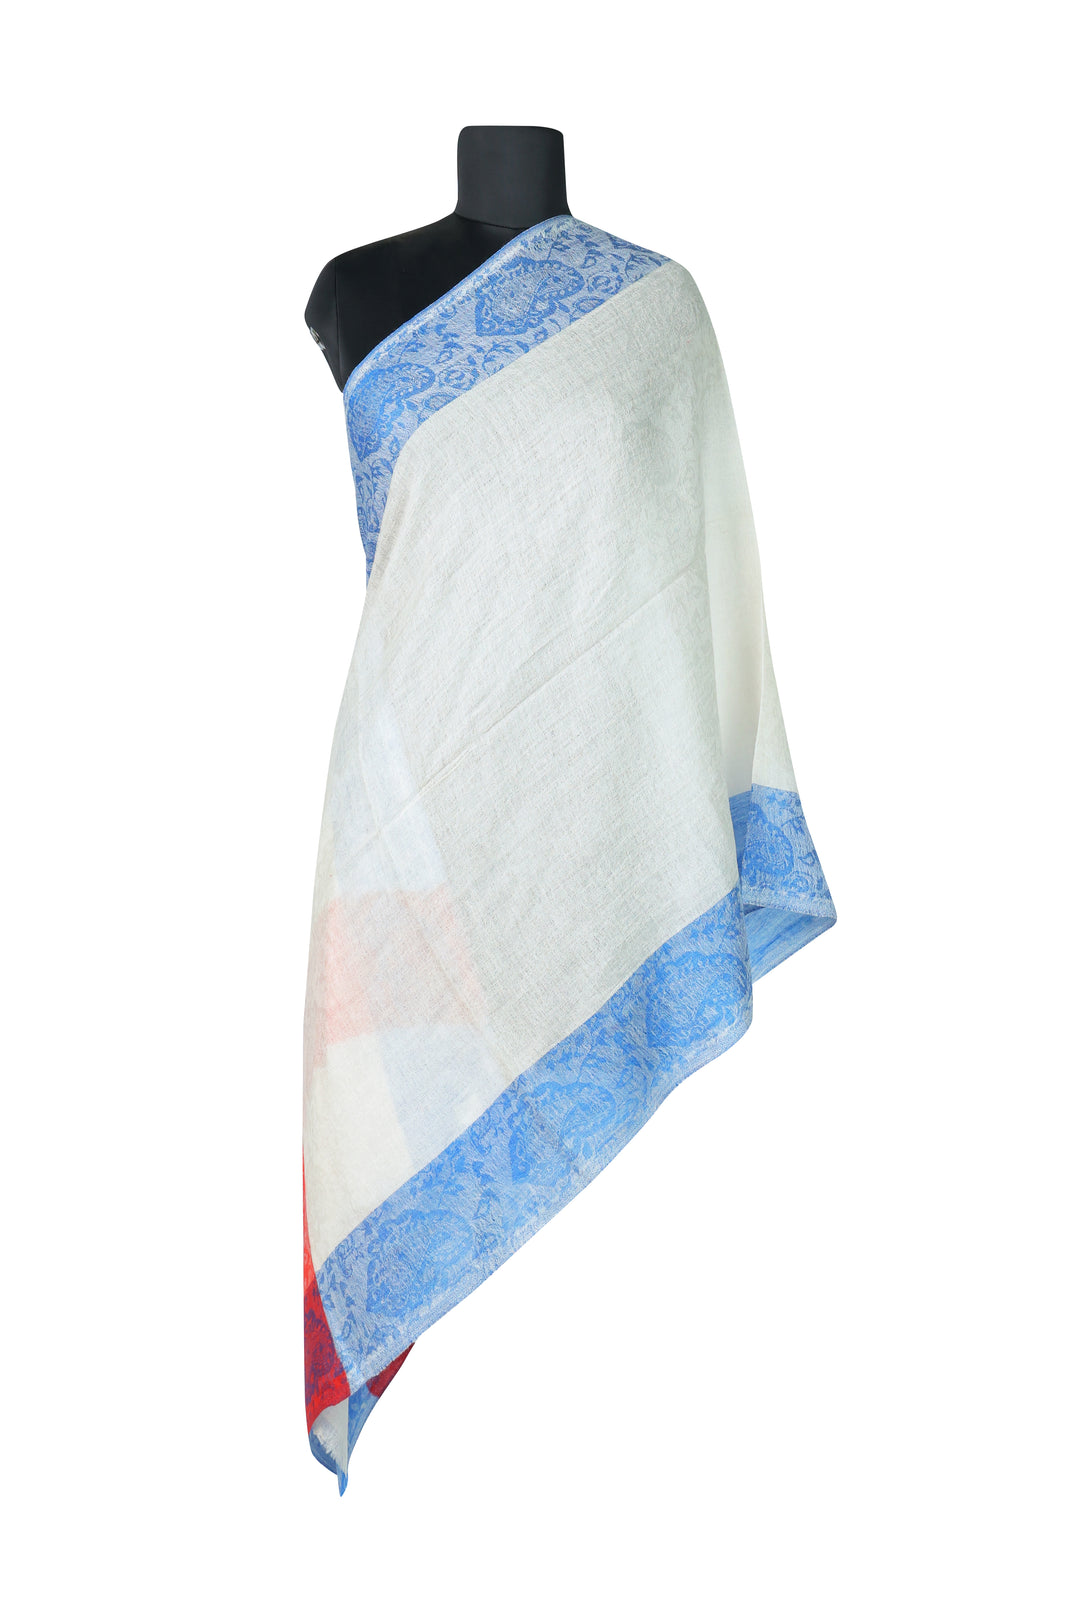 Premium Pashmina Wool Elegance Shawl, Off-white Blue & Red